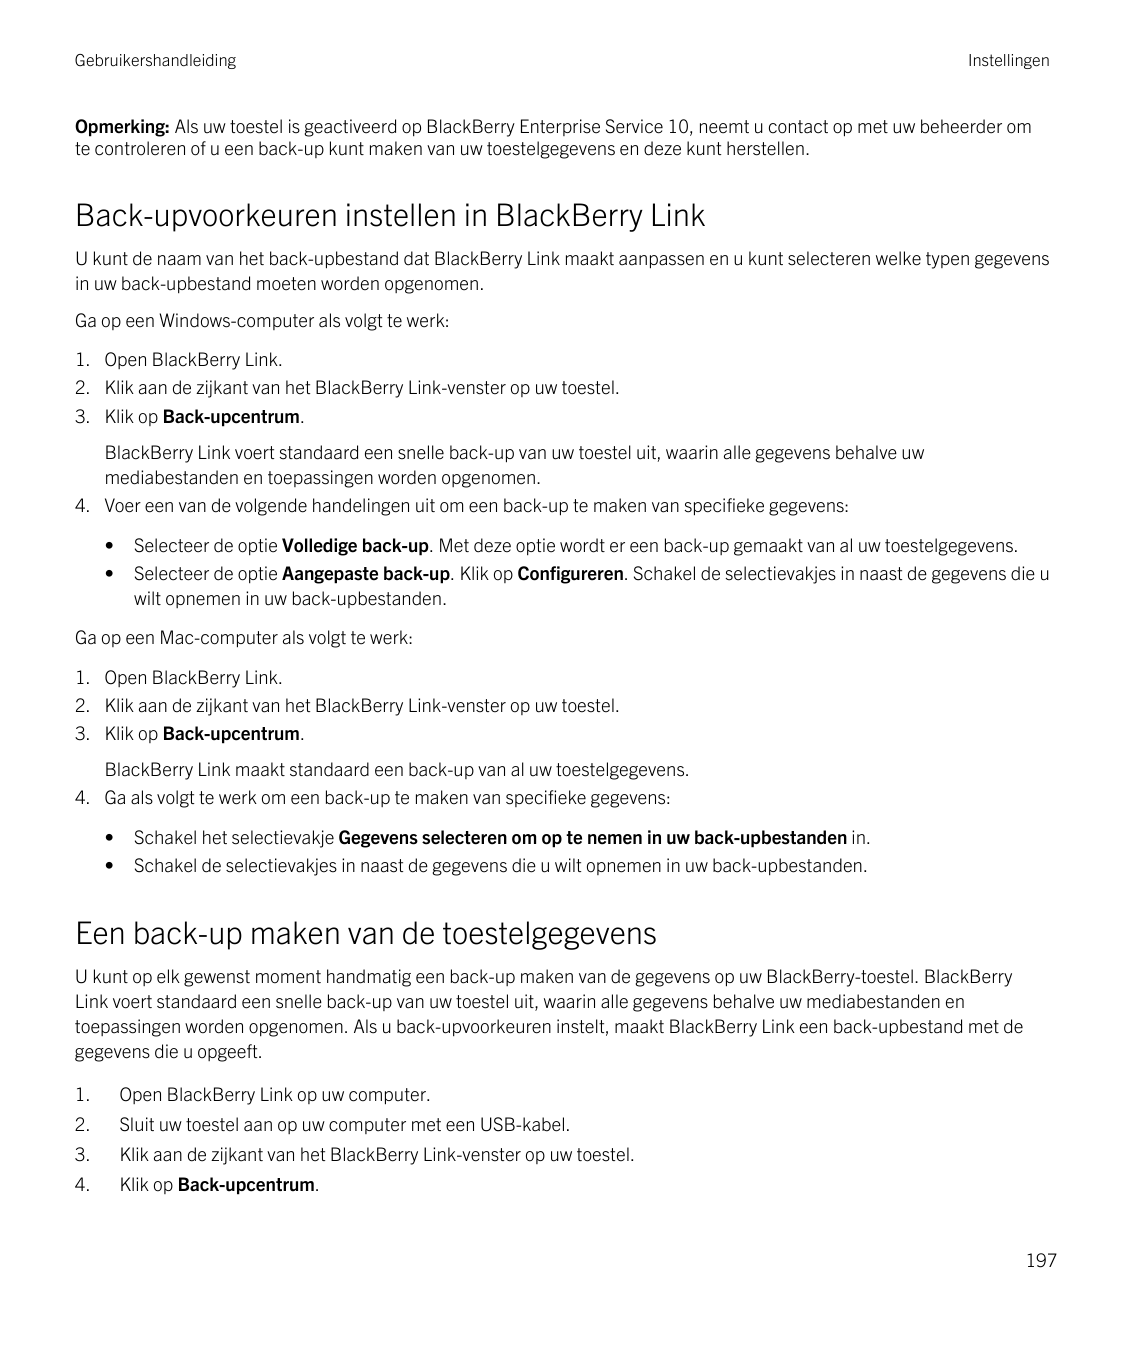 GebruikershandleidingInstellingenOpmerking: Als uw toestel is geactiveerd op BlackBerry Enterprise Service 10, neemt u contact o